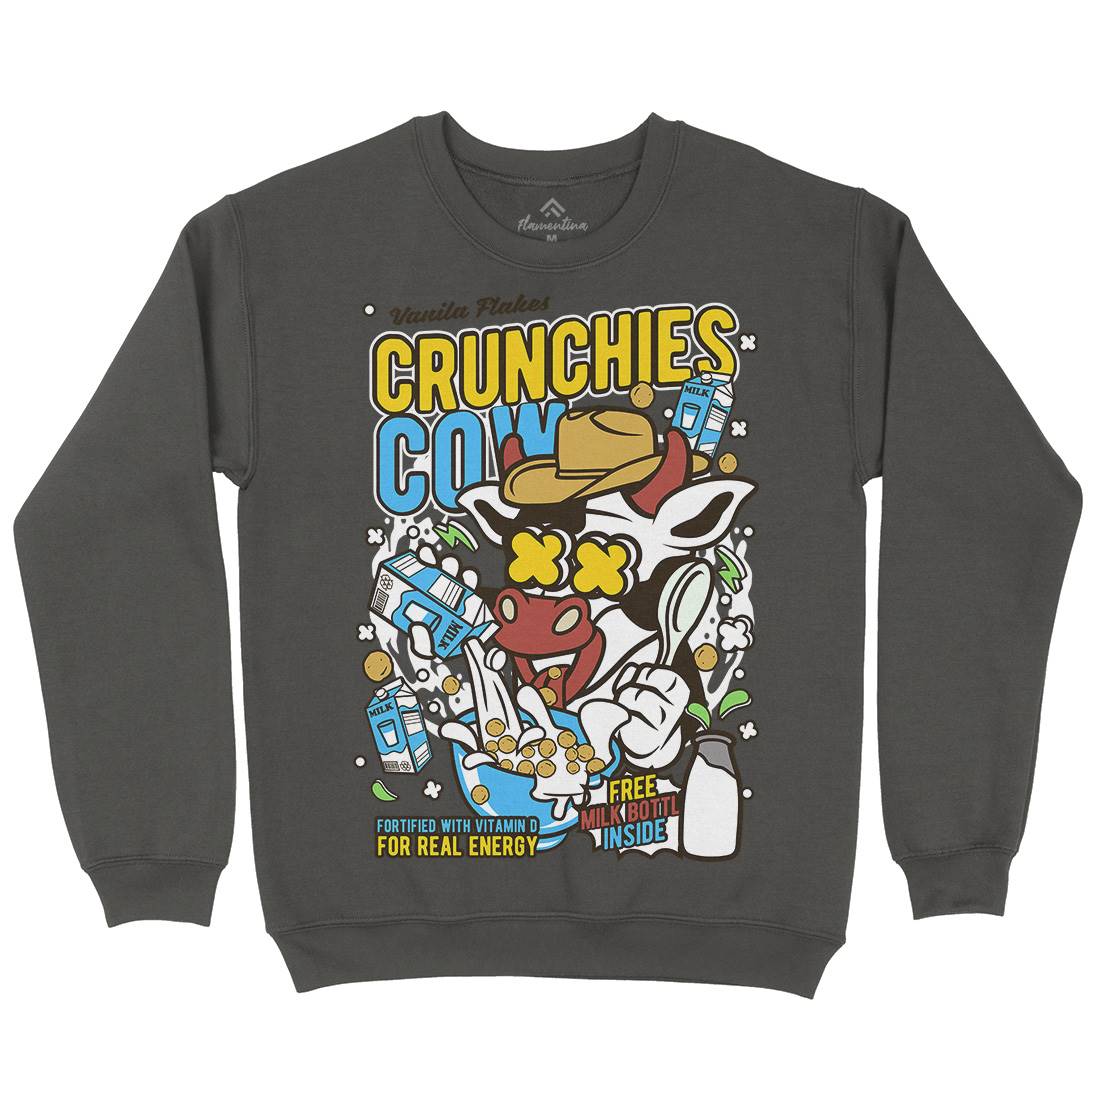 Crunchies Cow Kids Crew Neck Sweatshirt Food C533